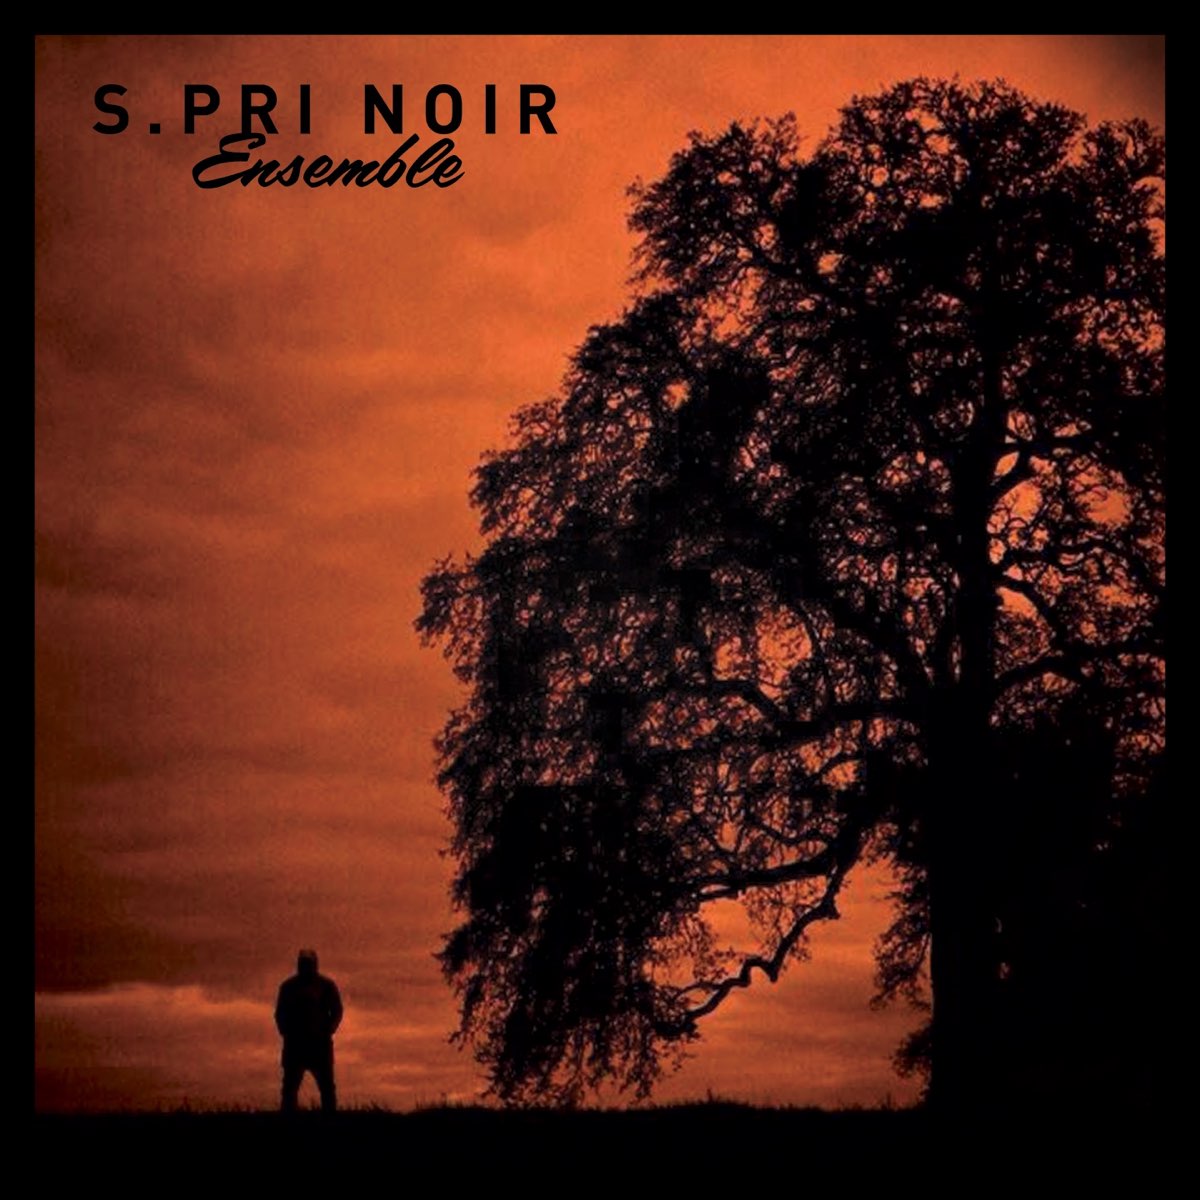 Ensemble - Single – Album par S.Pri Noir – Apple Music